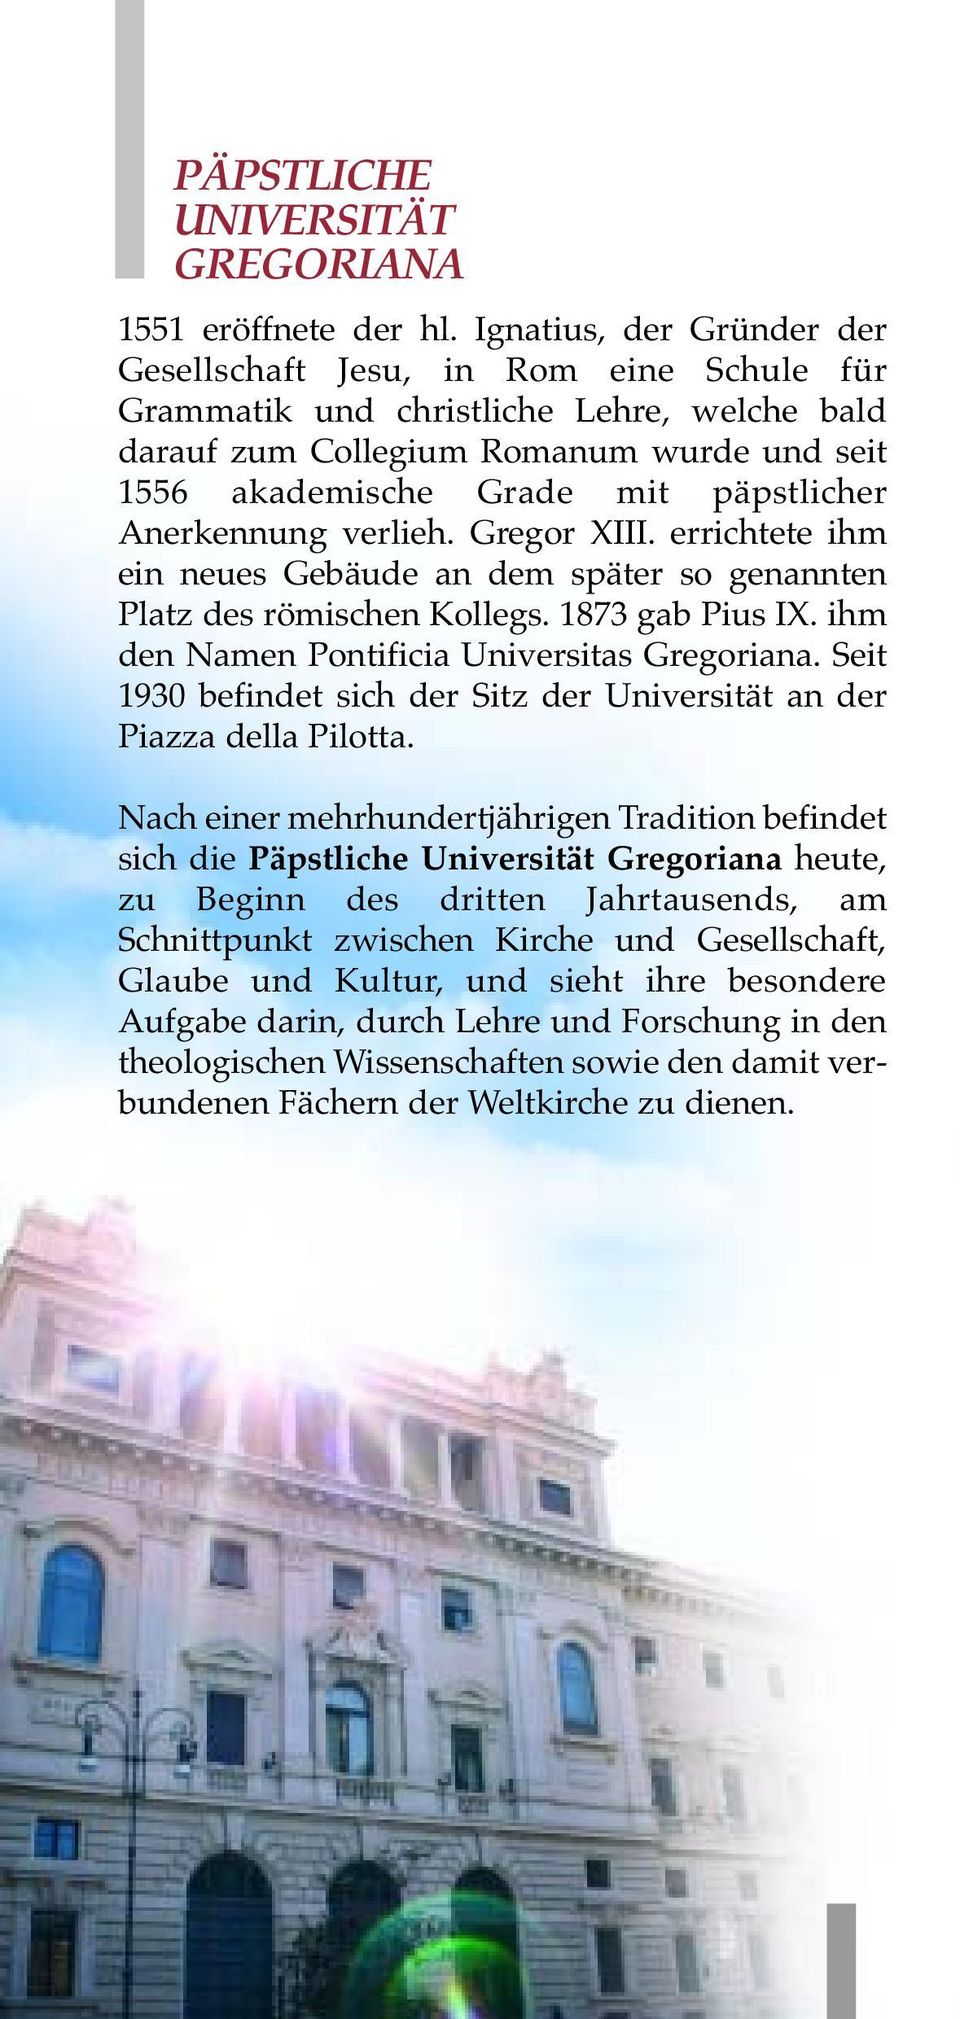 Anerkennung verlieh. Gregor XIII. errichtete ihm ein neues Gebäude an dem später so genannten Platz des römischen Kollegs. 1873 gab Pius IX. ihm den Namen Pontificia Universitas Gregoriana.